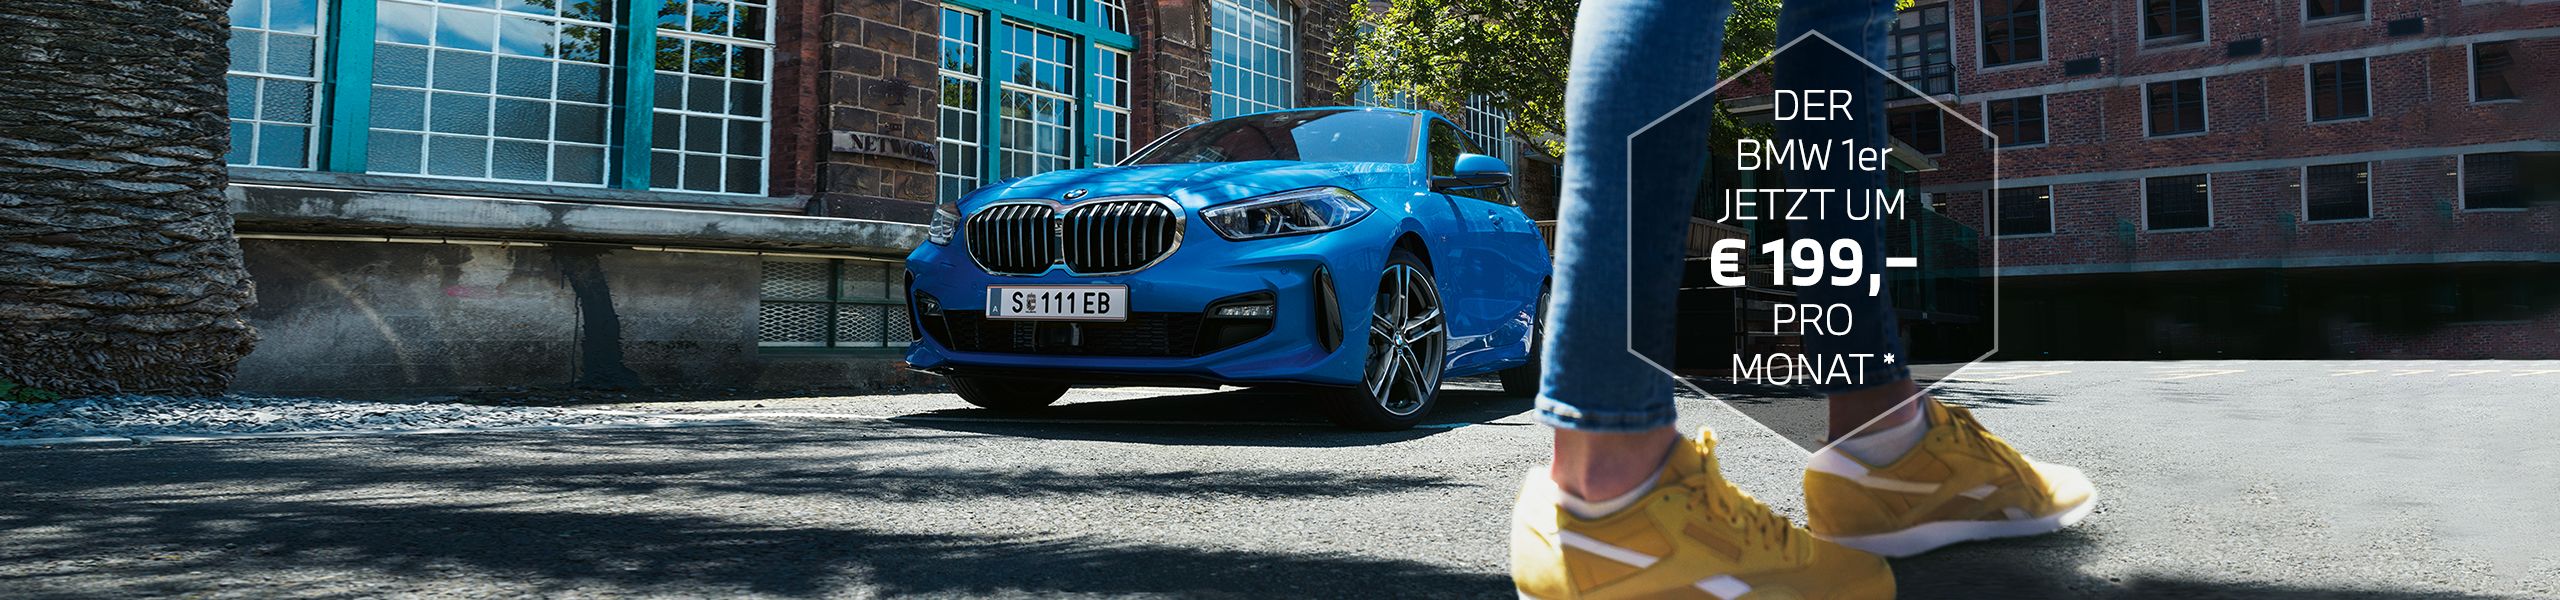 BMW 1er in blau vor historischem Gebäude und den Beinen einer Frau in Jeans und gelben Sneakers im Vordergrund.